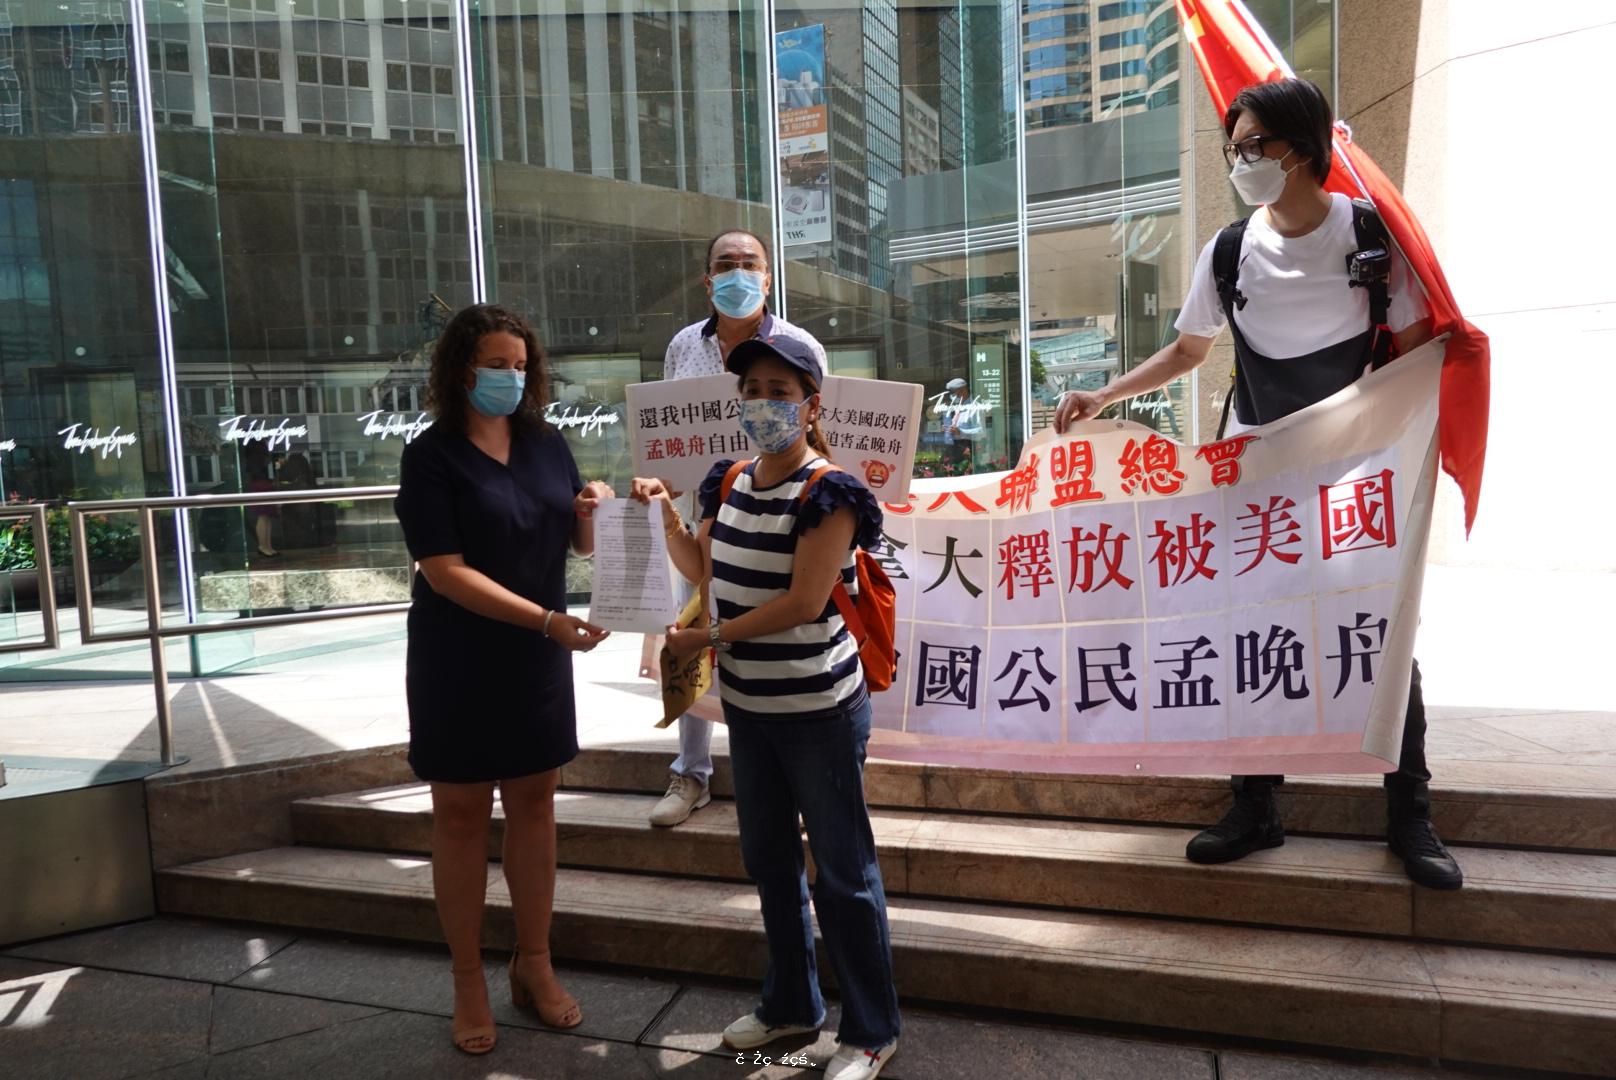 要求加拿大釋放被美國 迫害的中國公民孟晚舟